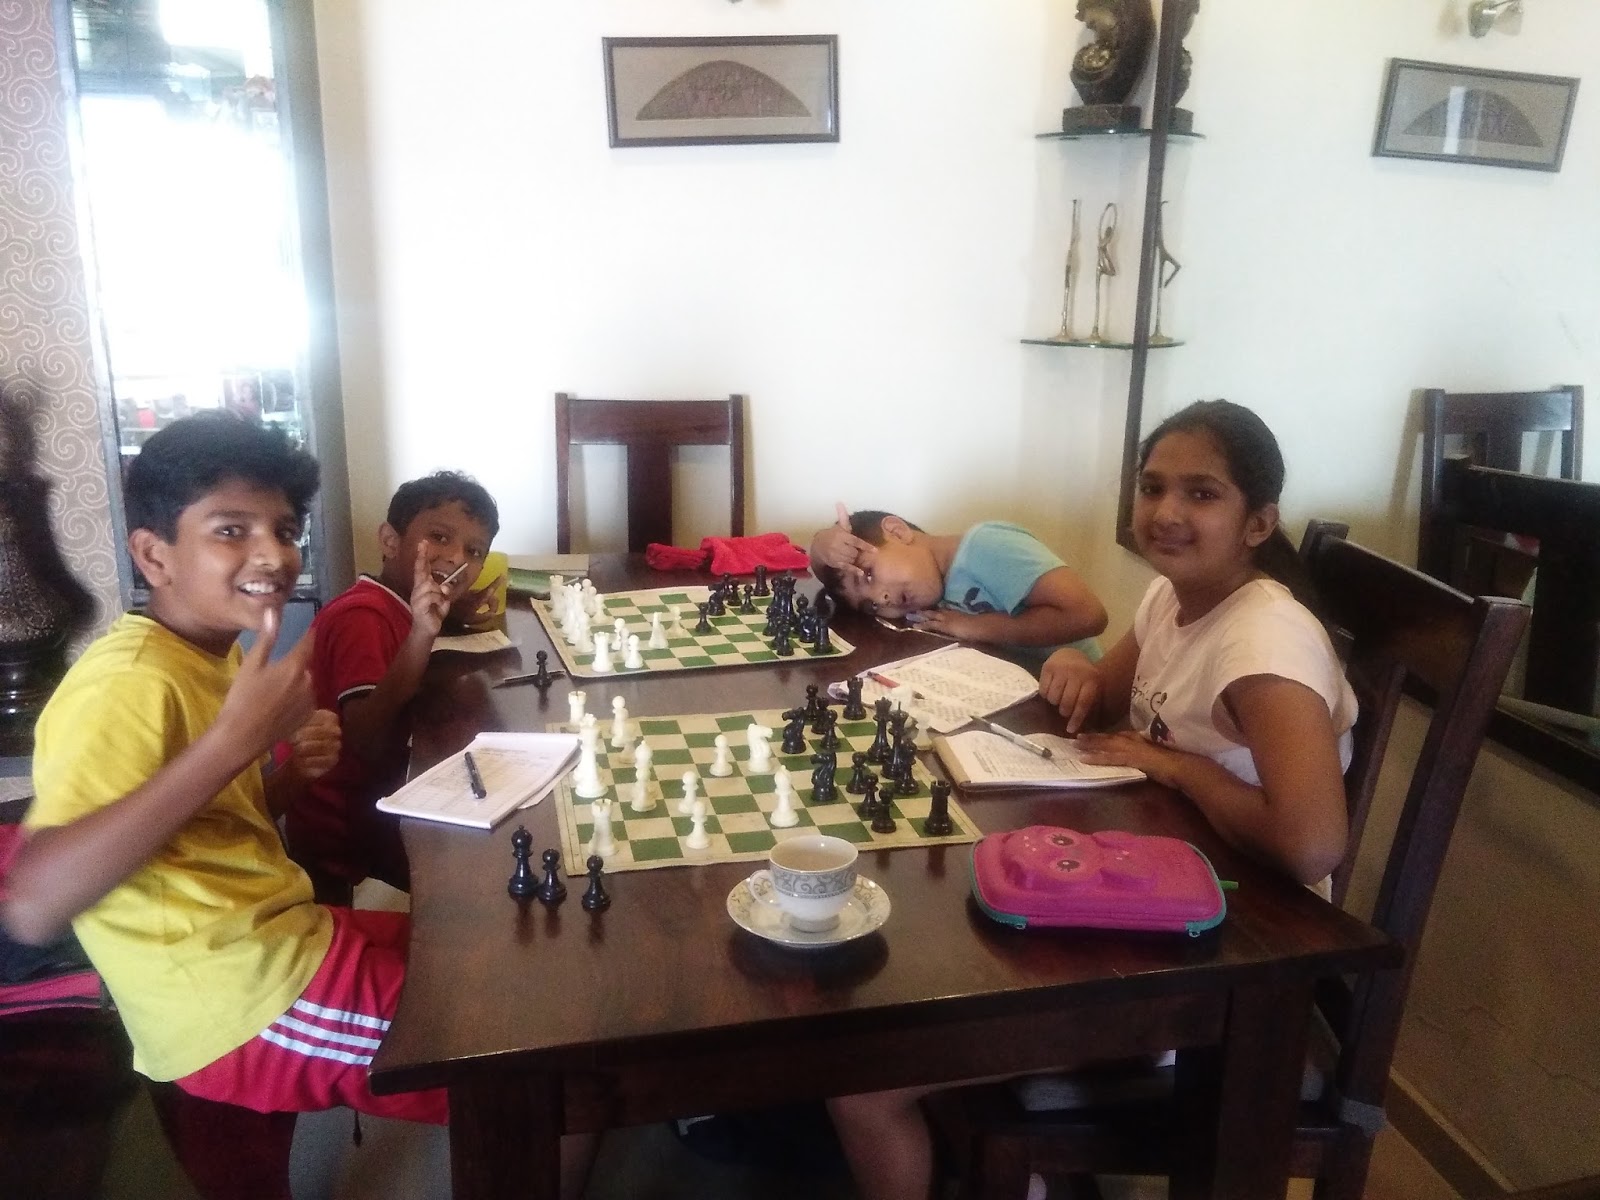 Sudharshan's Chessboard